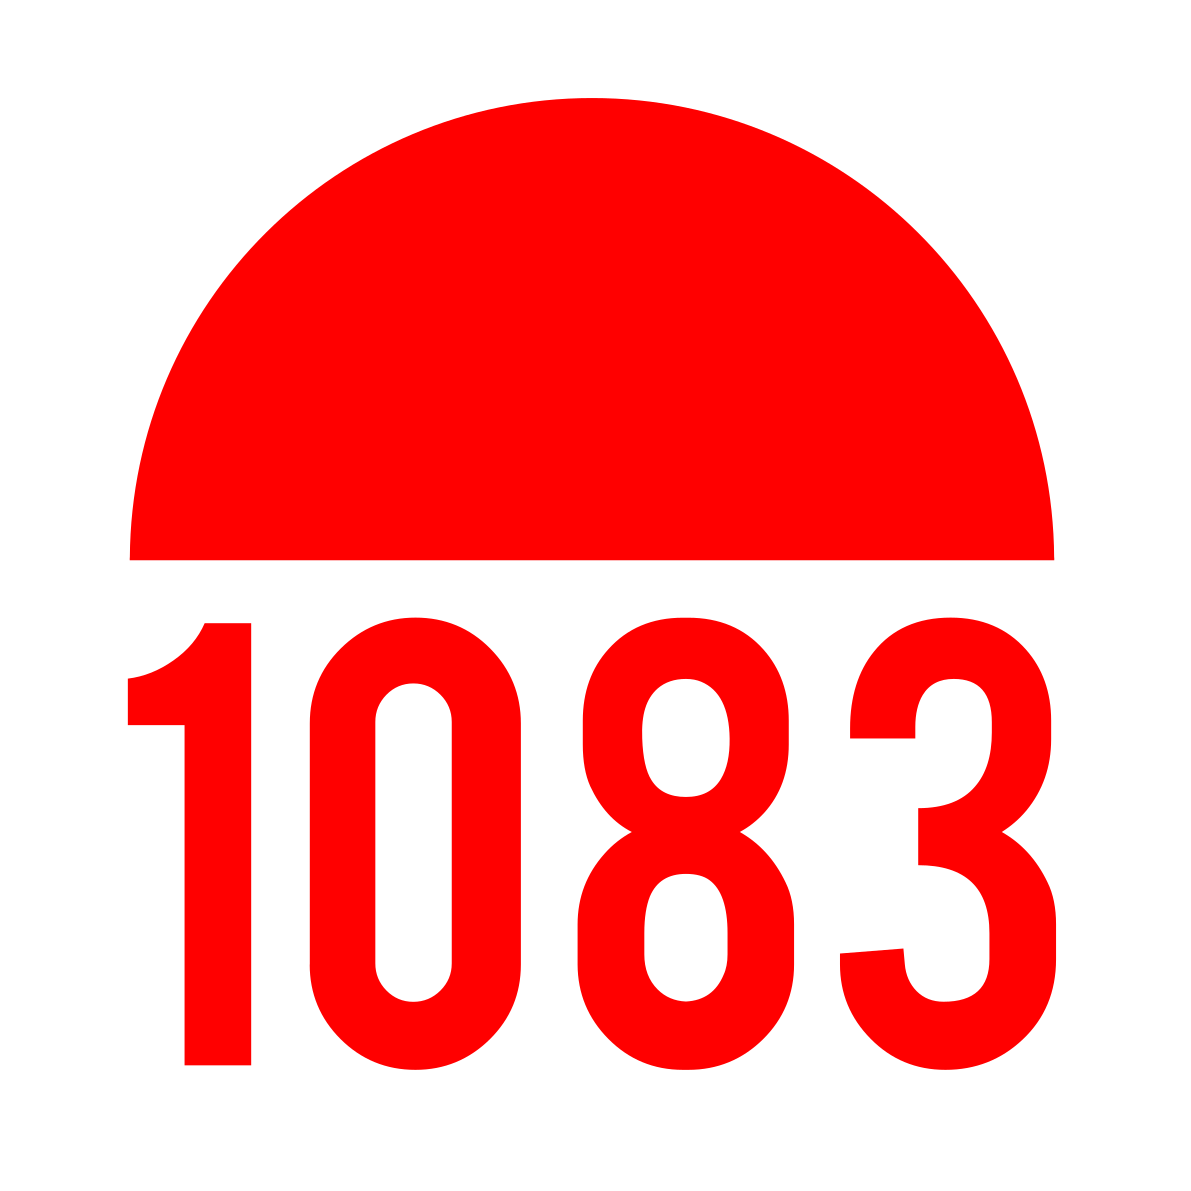 Logo de 1083